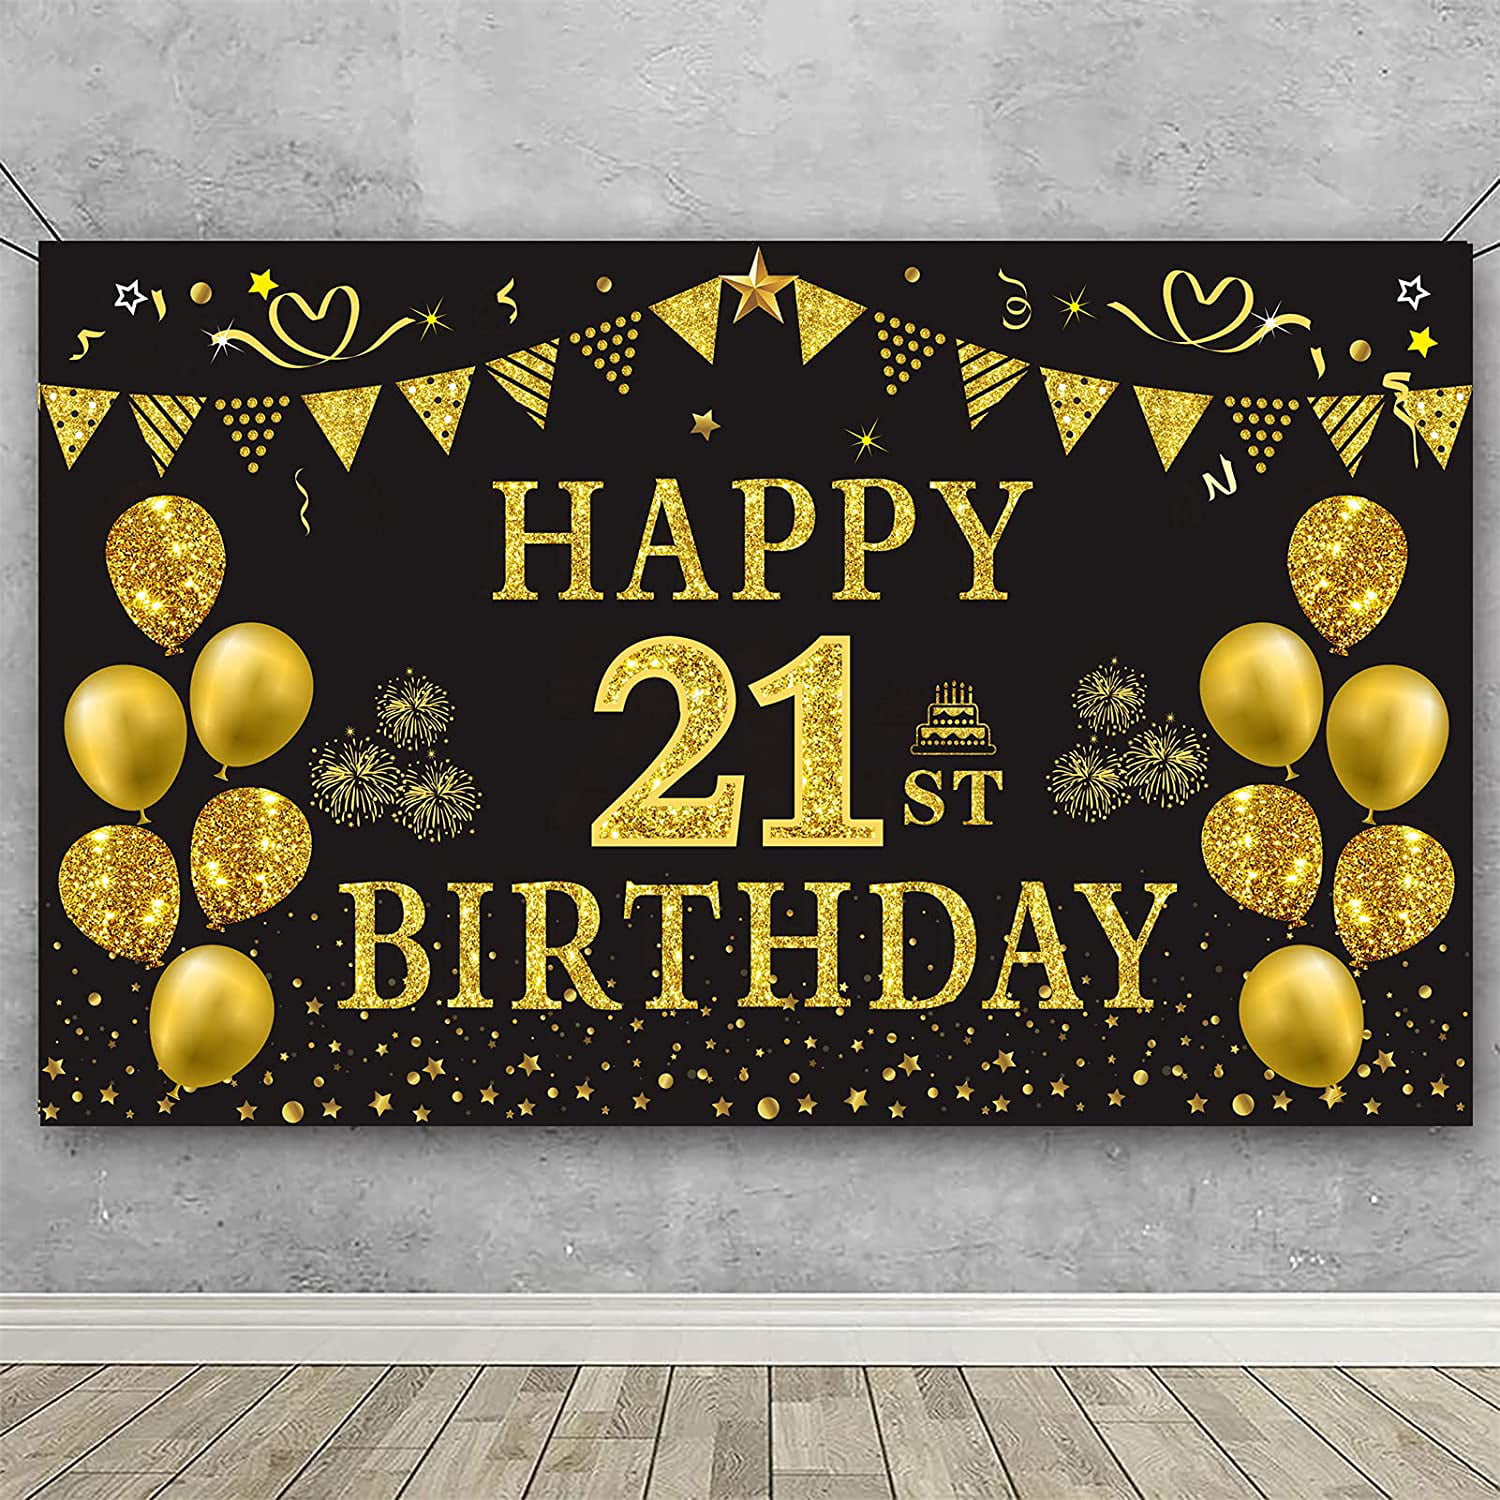 Đang tìm kiếm trgowaul trang trí sinh nhật 21 vàng đen để tạo nên bữa tiệc sinh nhật ấn tượng? Hãy xem ngay những trgowaul trong bộ sưu tập này! Với sự kết hợp độc đáo giữa màu vàng và đen, trgowaul sẽ đem đến cho bạn một không gian sinh nhật đầy cá tính và sang trọng.